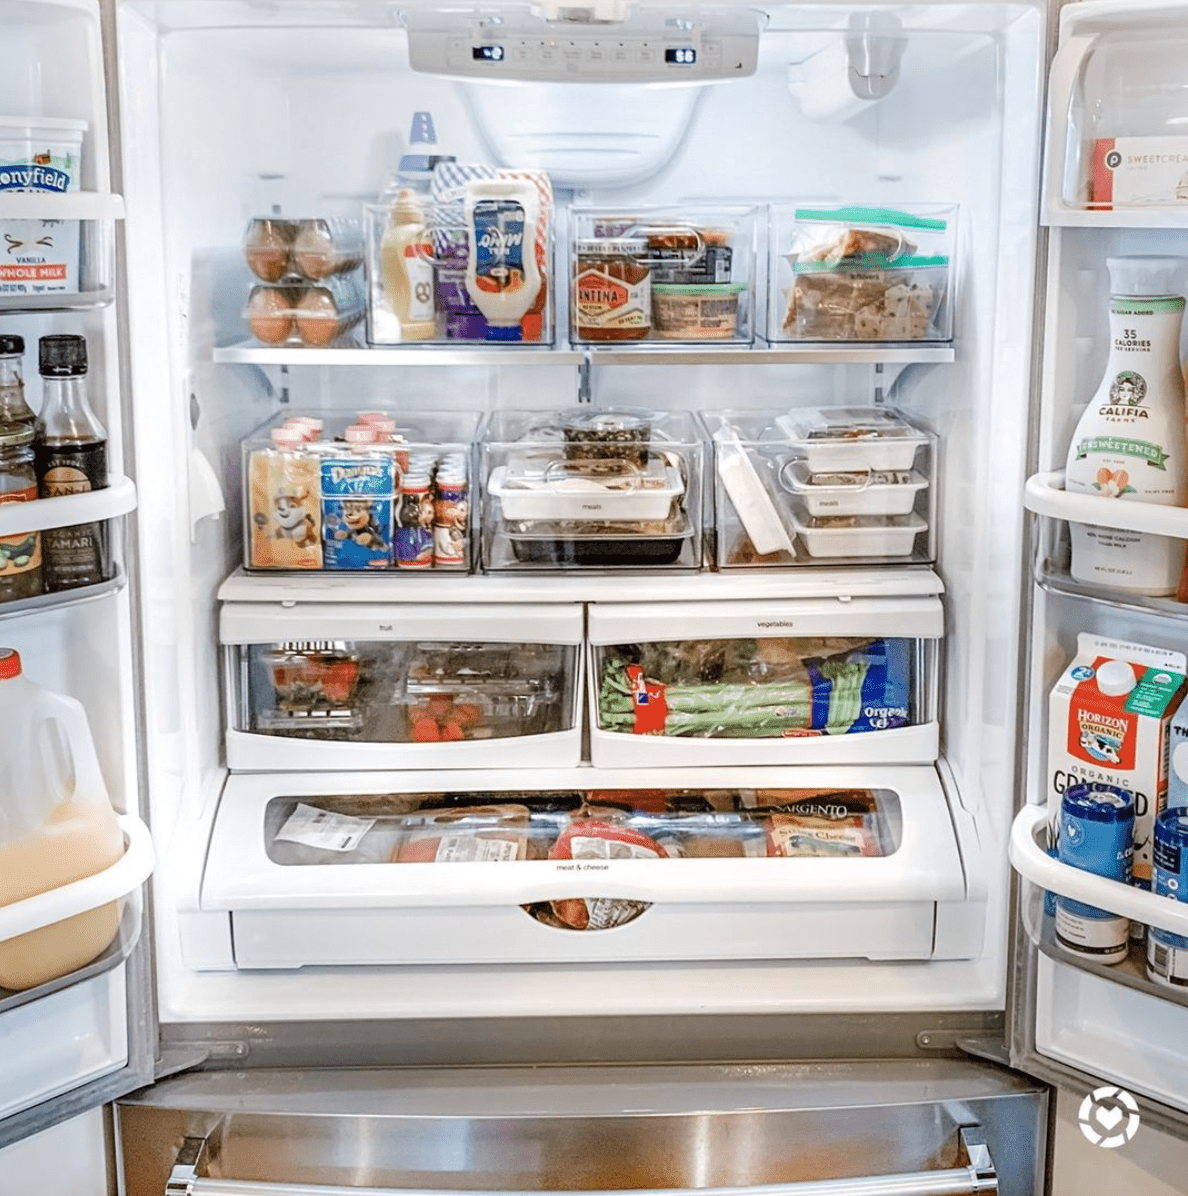 organisierter Kühlschrank mit Abfalleimern